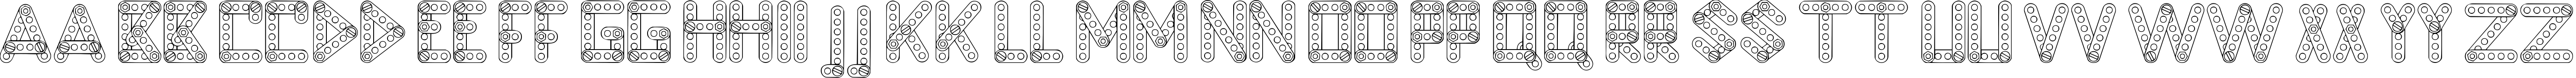 Пример написания английского алфавита шрифтом LC Construct